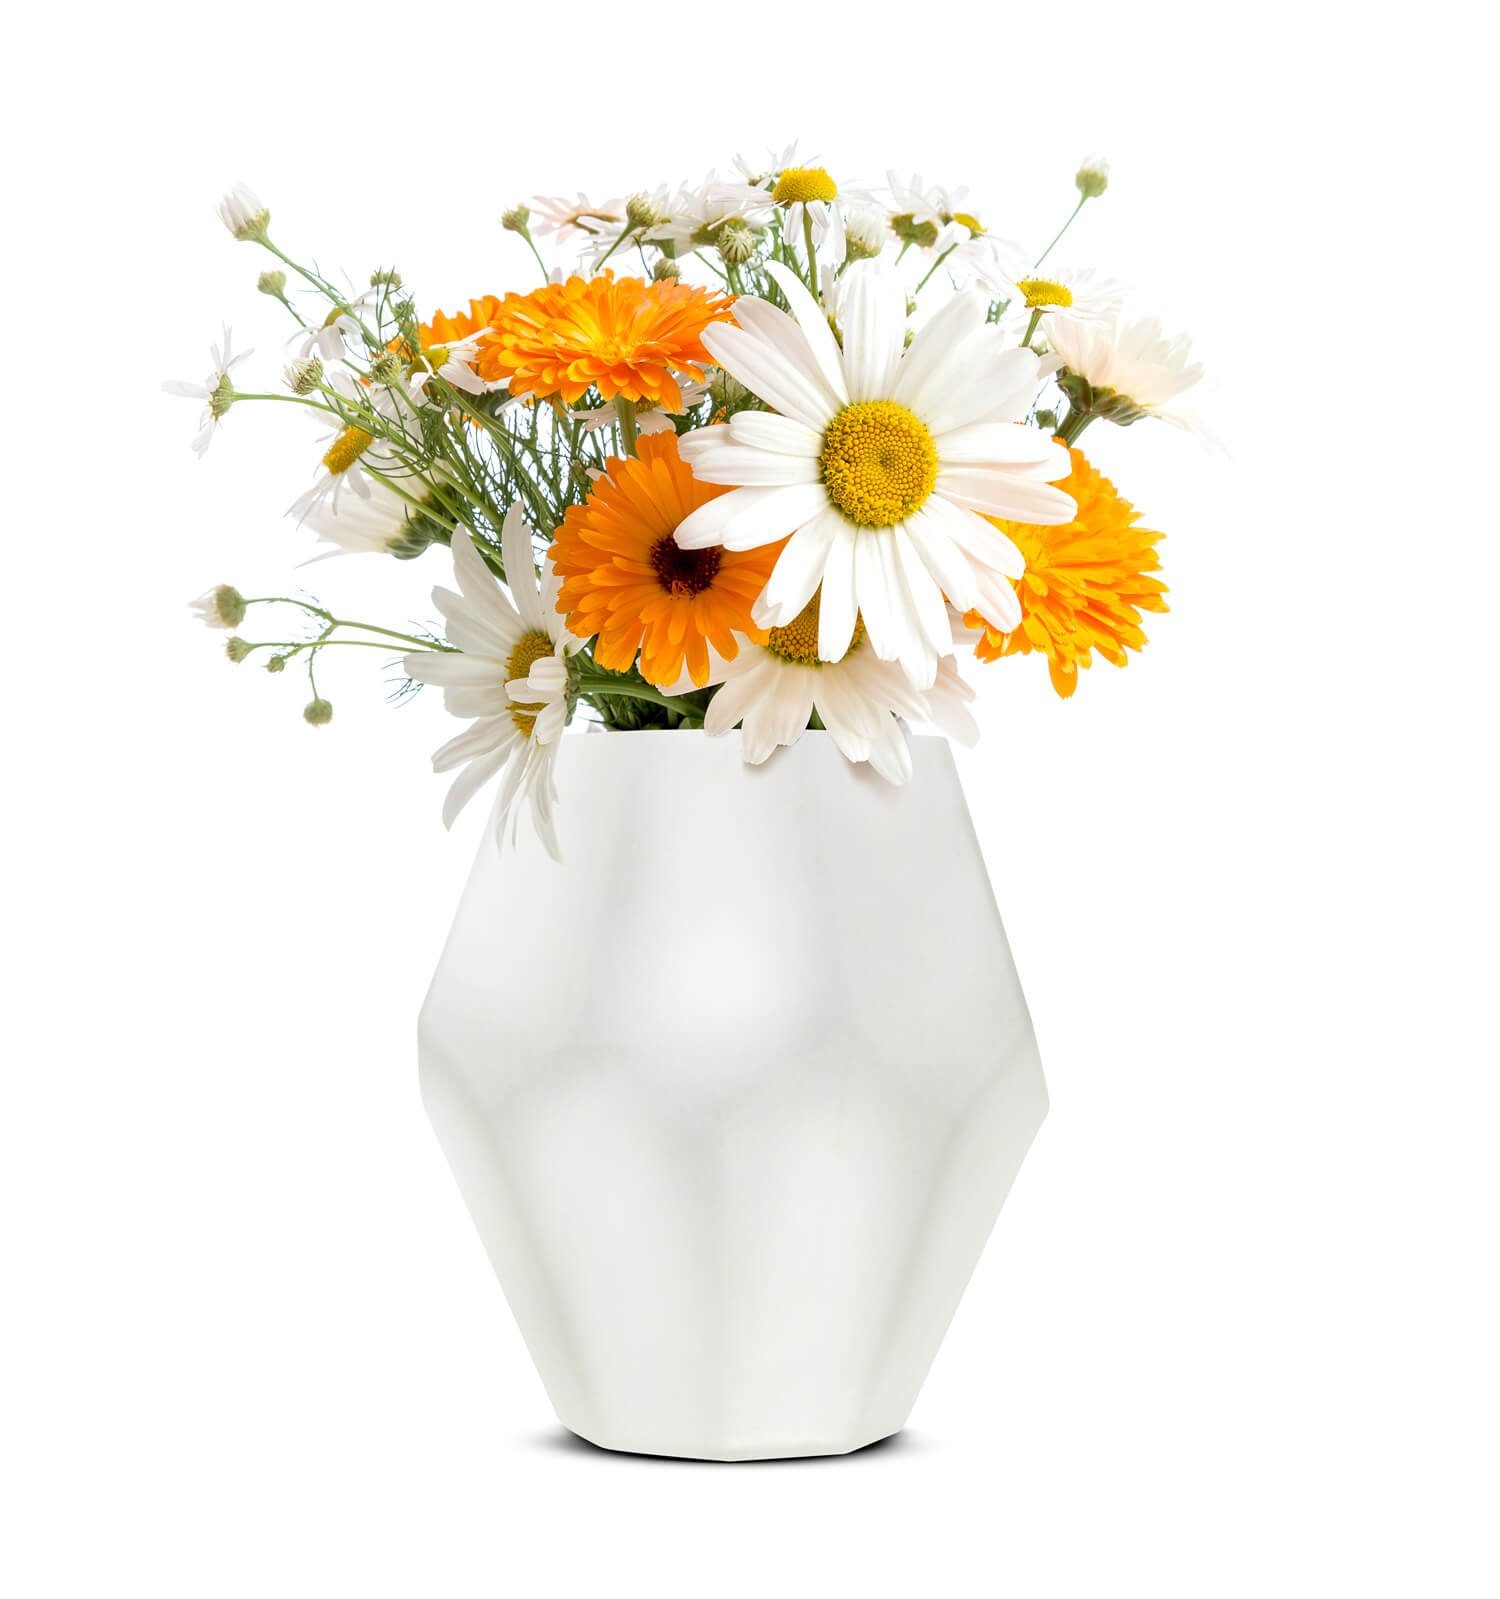 Heidi Blumenvase Dekovase Vase Blumentopf Sendez Glasvase Dekovase Pflanztopf Tischvase Weiß